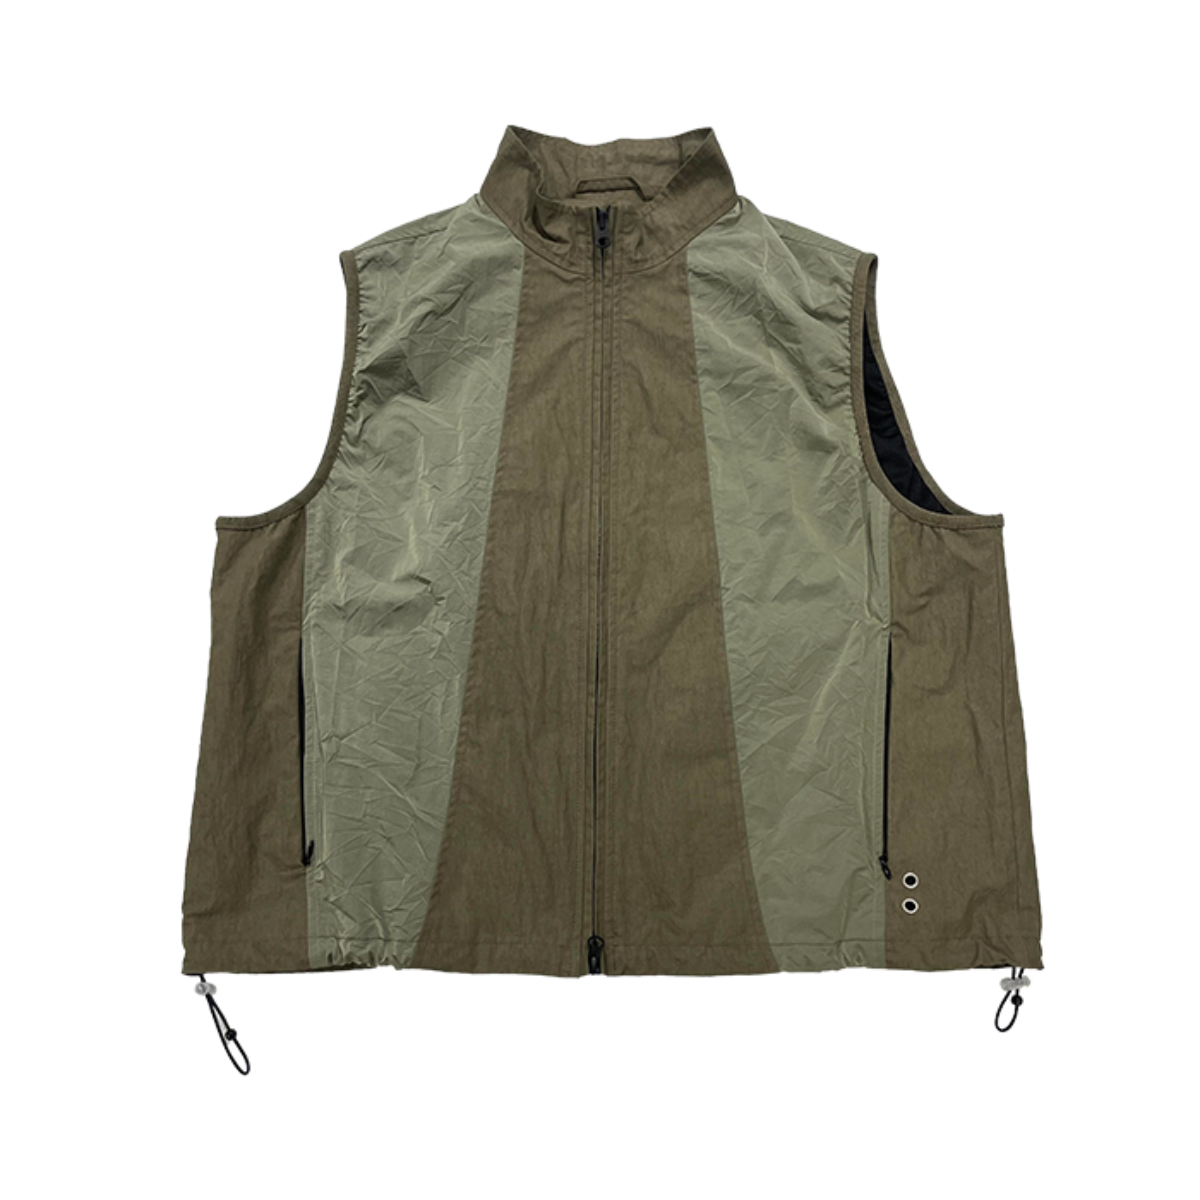 TCM 3 slit vest (khaki brown)